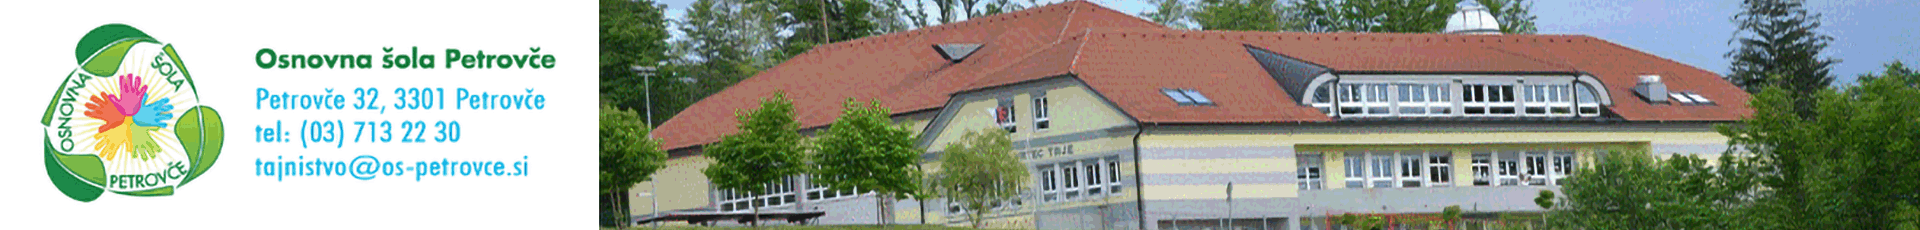 Osnovna šola Petrovče